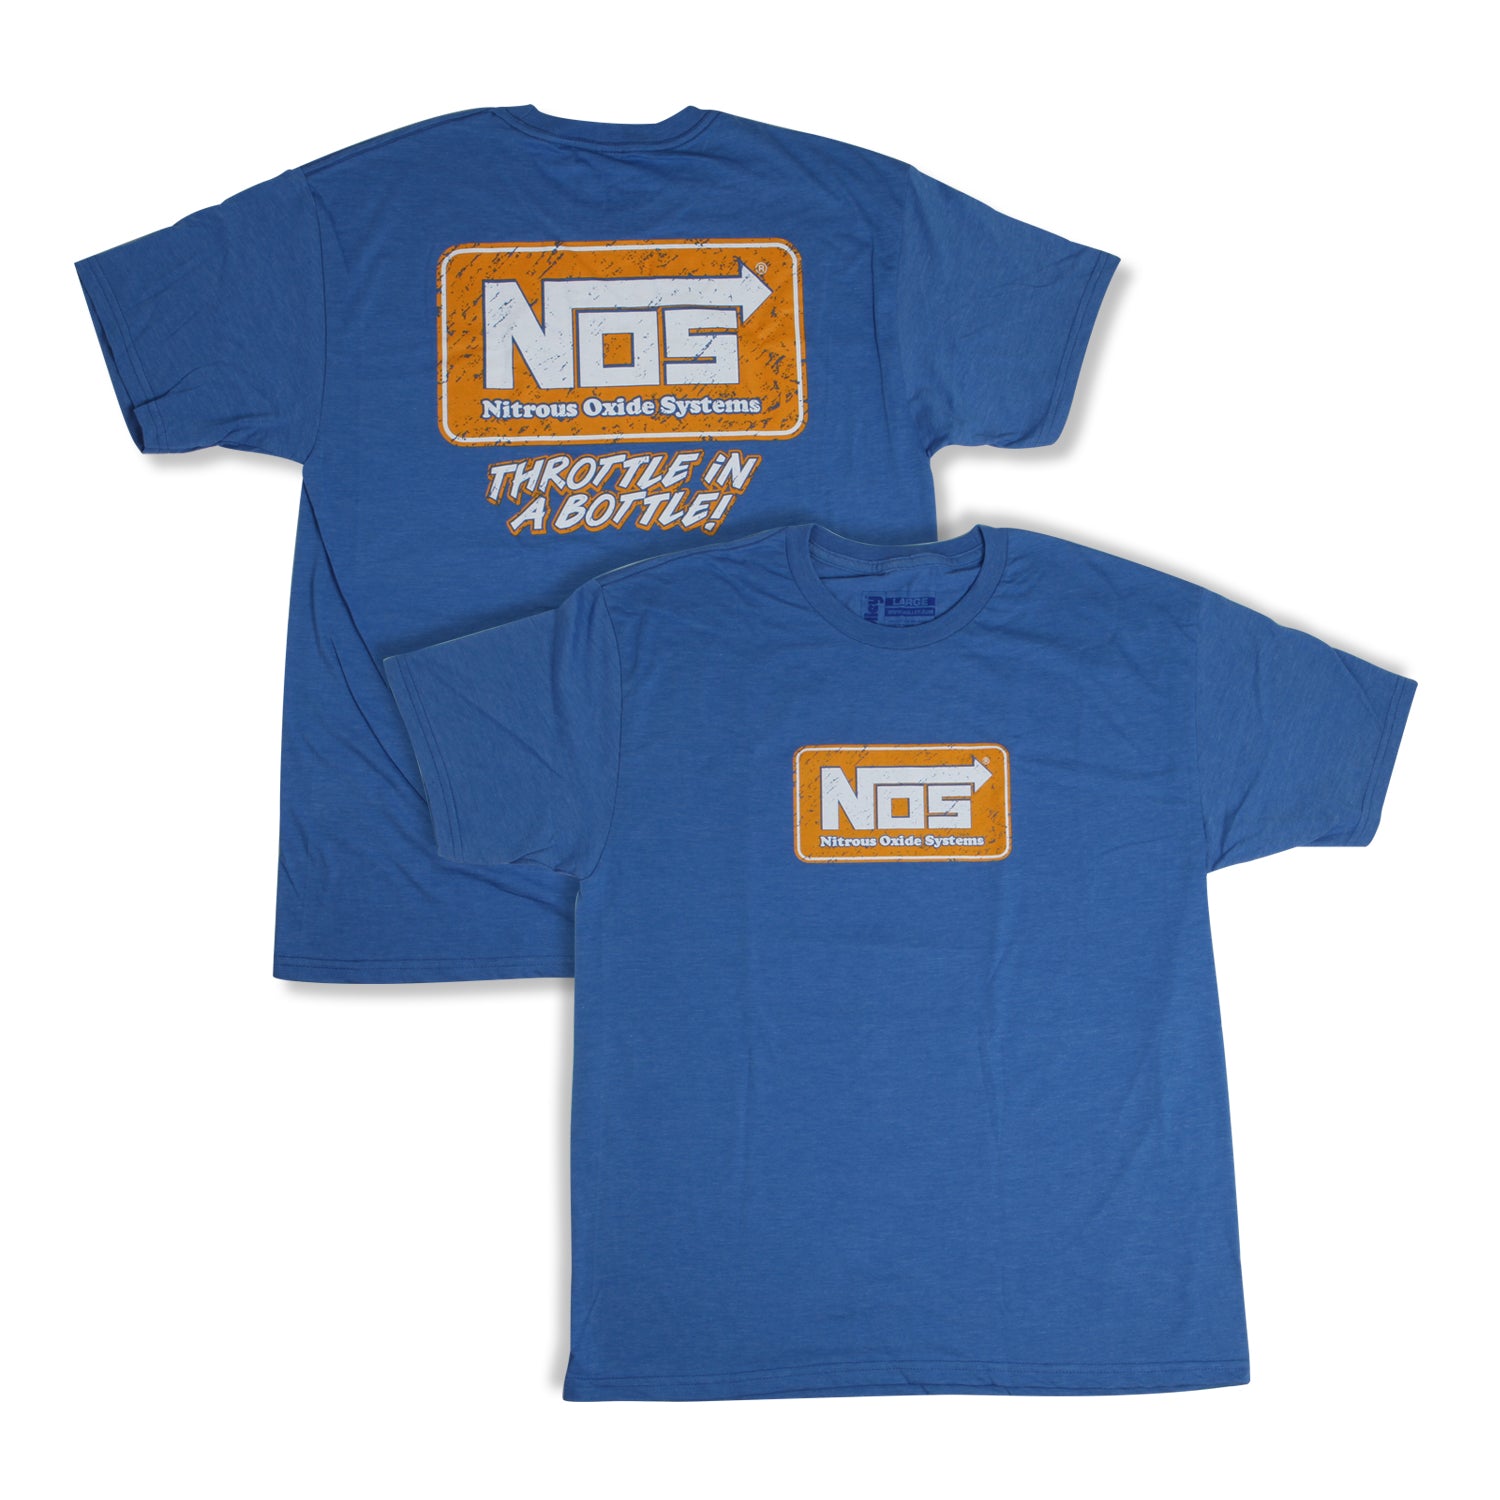 NOS/Nitrous Oxide System T-Shirt 19071-XLNOS